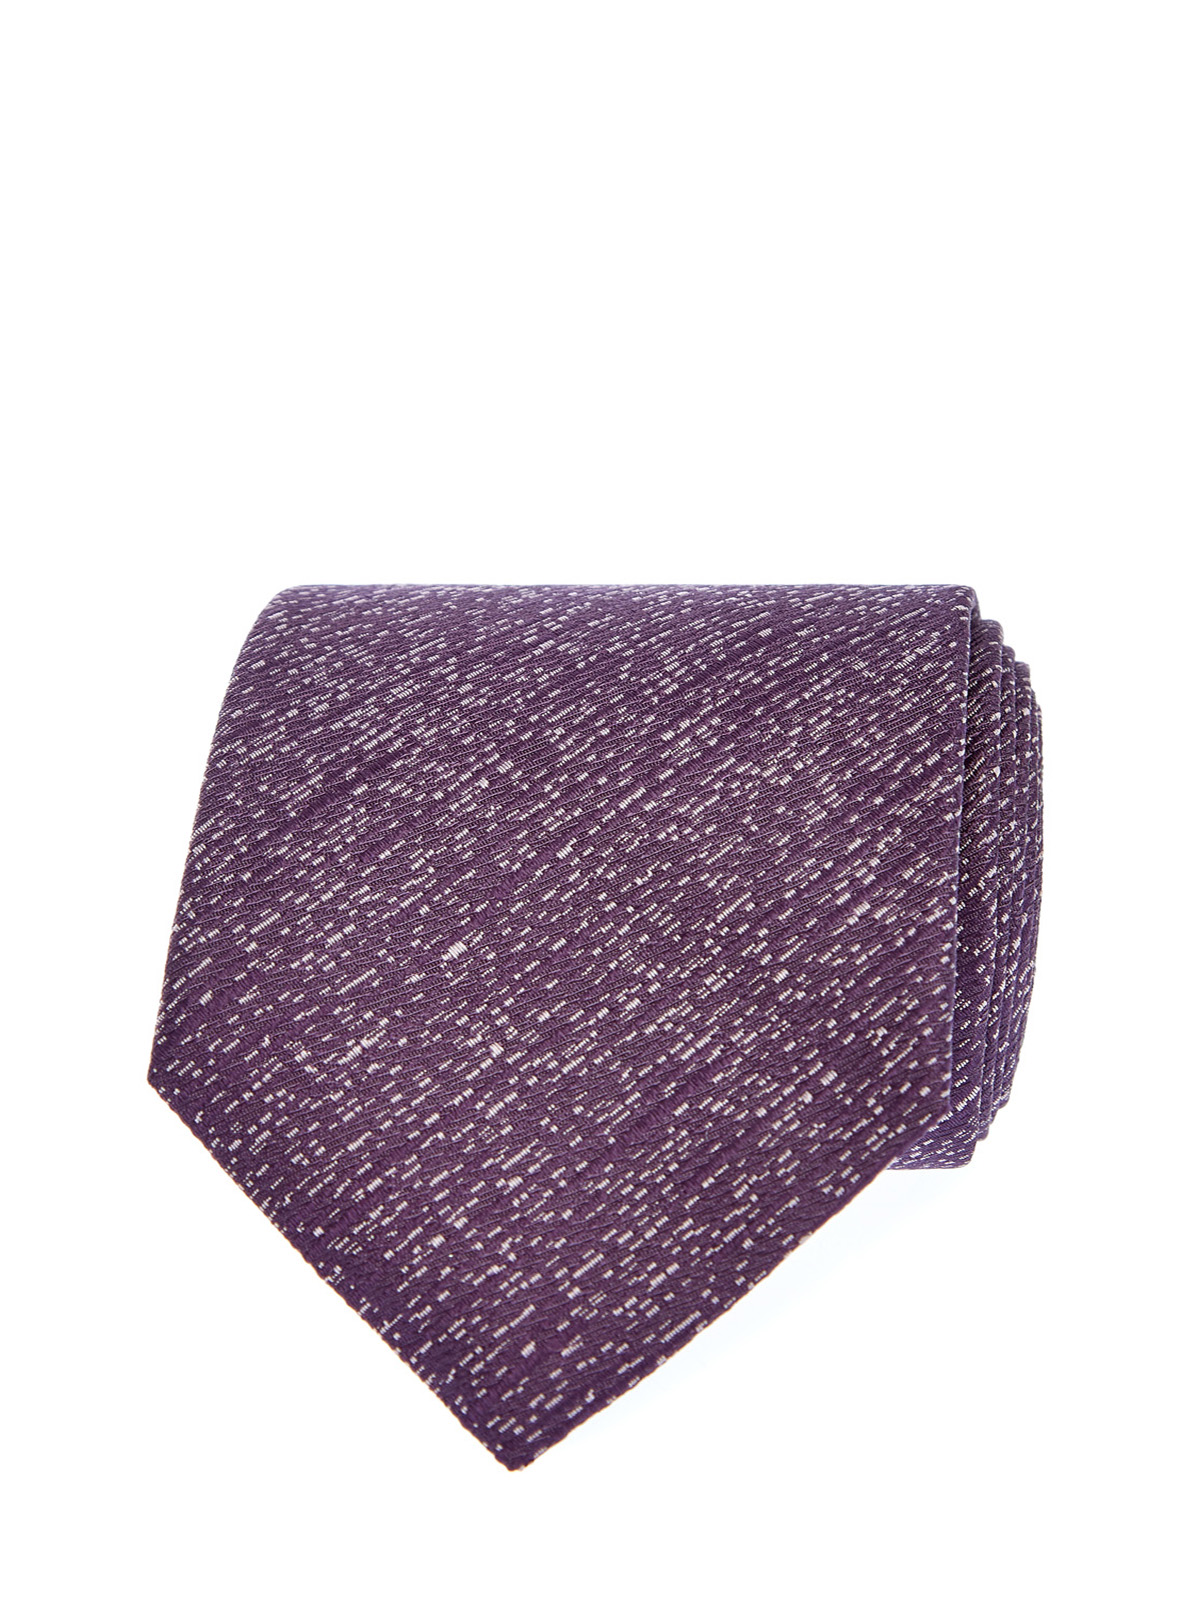 Шелковый галстук с вышитым жаккардовым принтом CANALI, цвет фиолетовый, размер 41;41.5;42;42.5;43;43.5;44